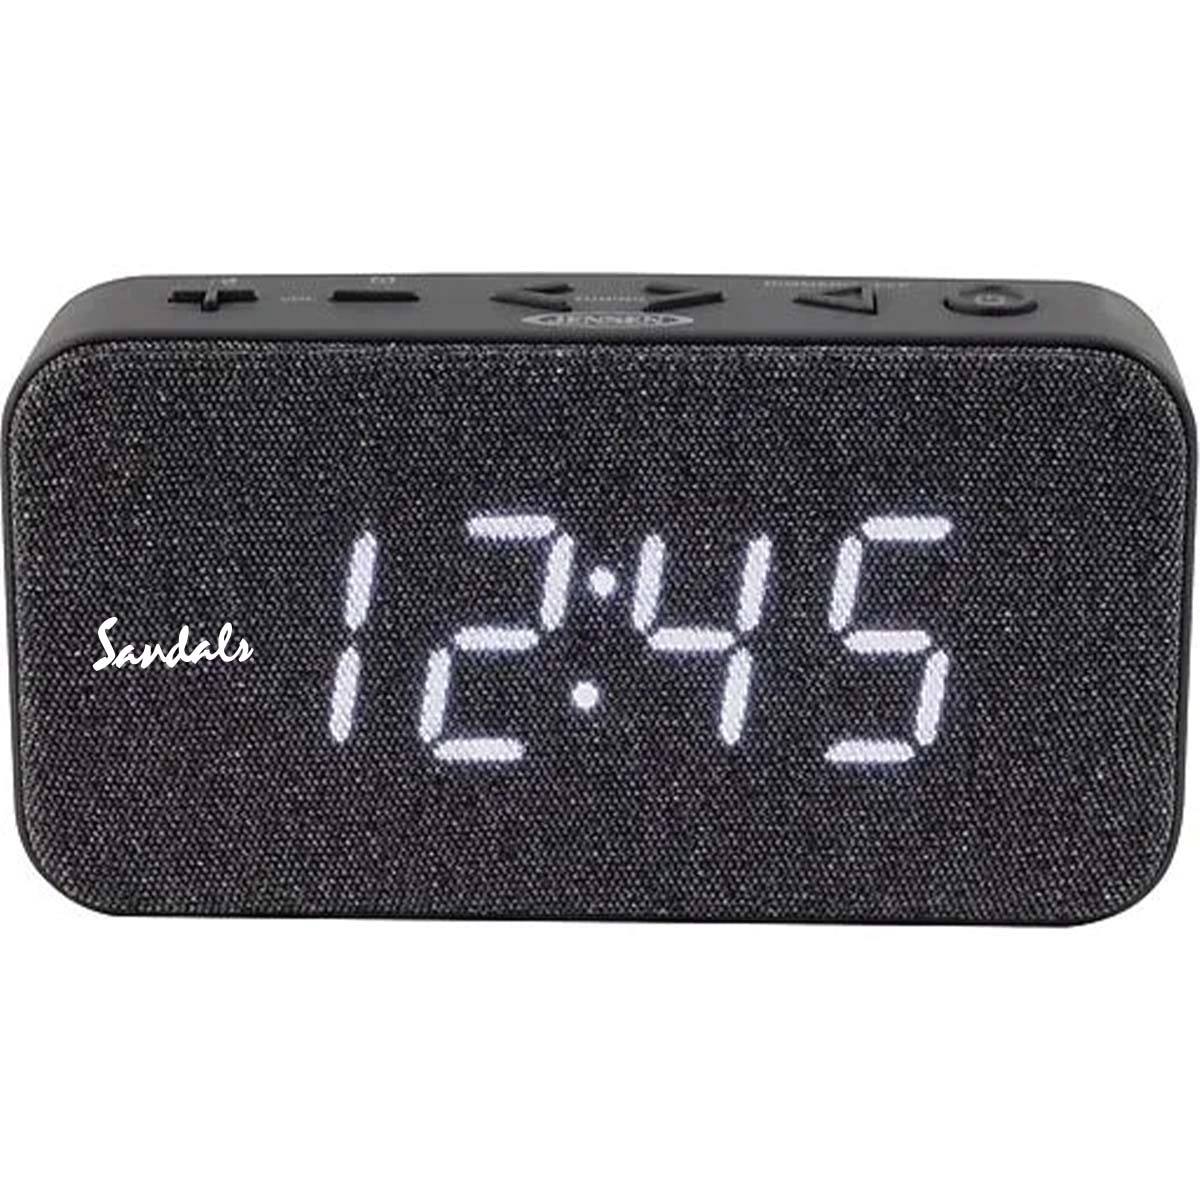 
                  
                    Jensen Audio FM Digital Dual Alarm Clock Radio
                  
                